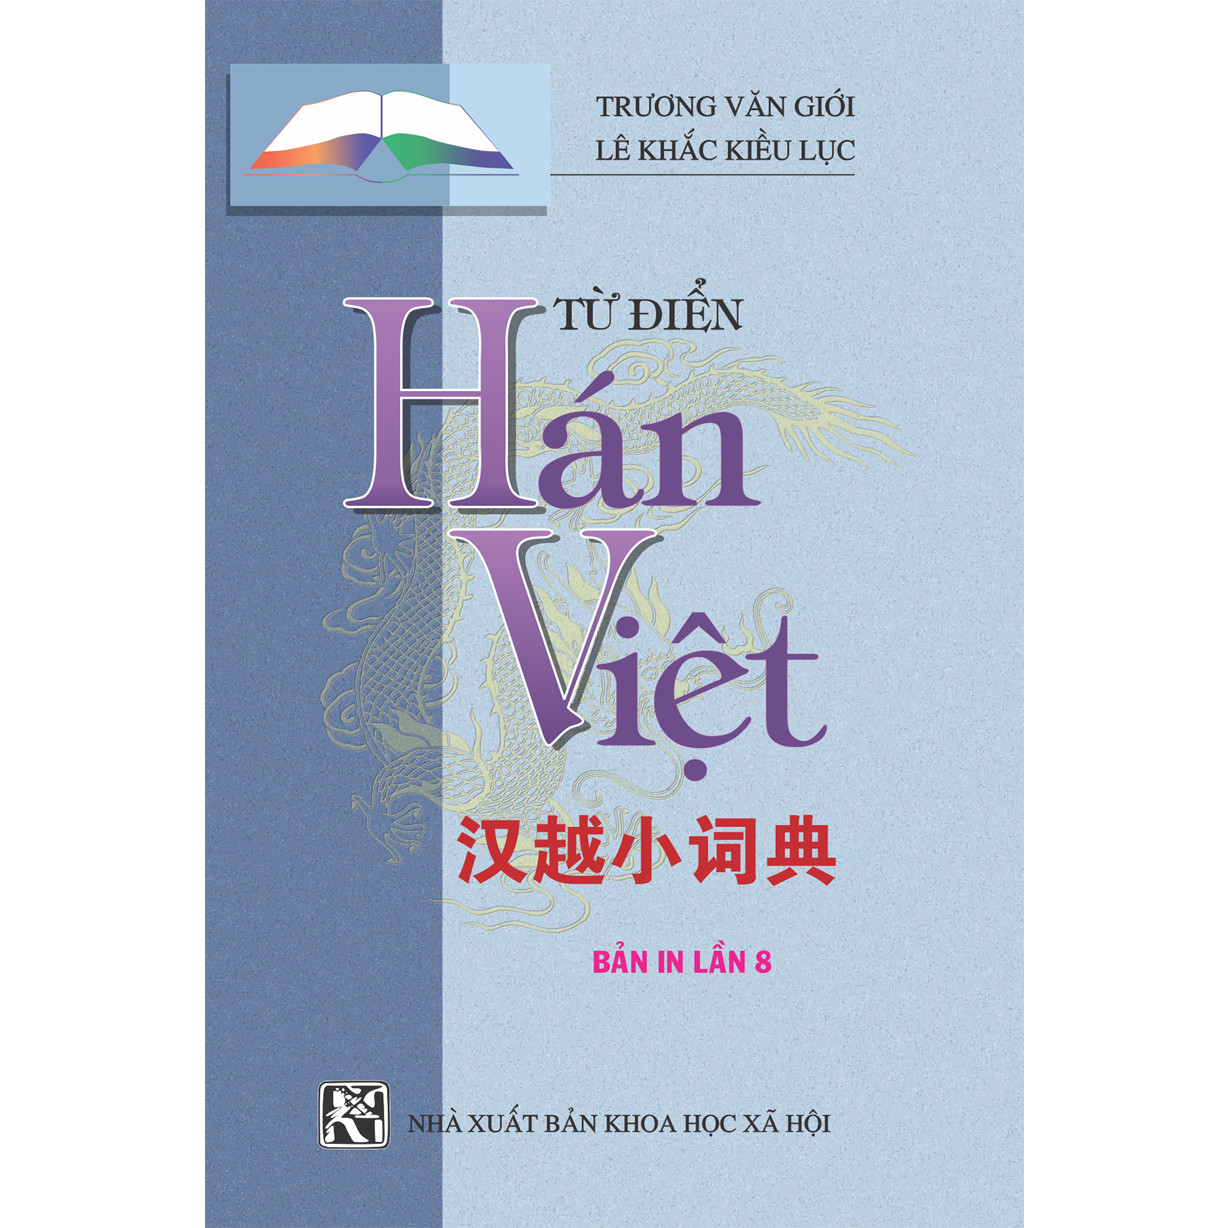 Từ Điển Hán Việt Bỏ Túi - Hải Hà SG